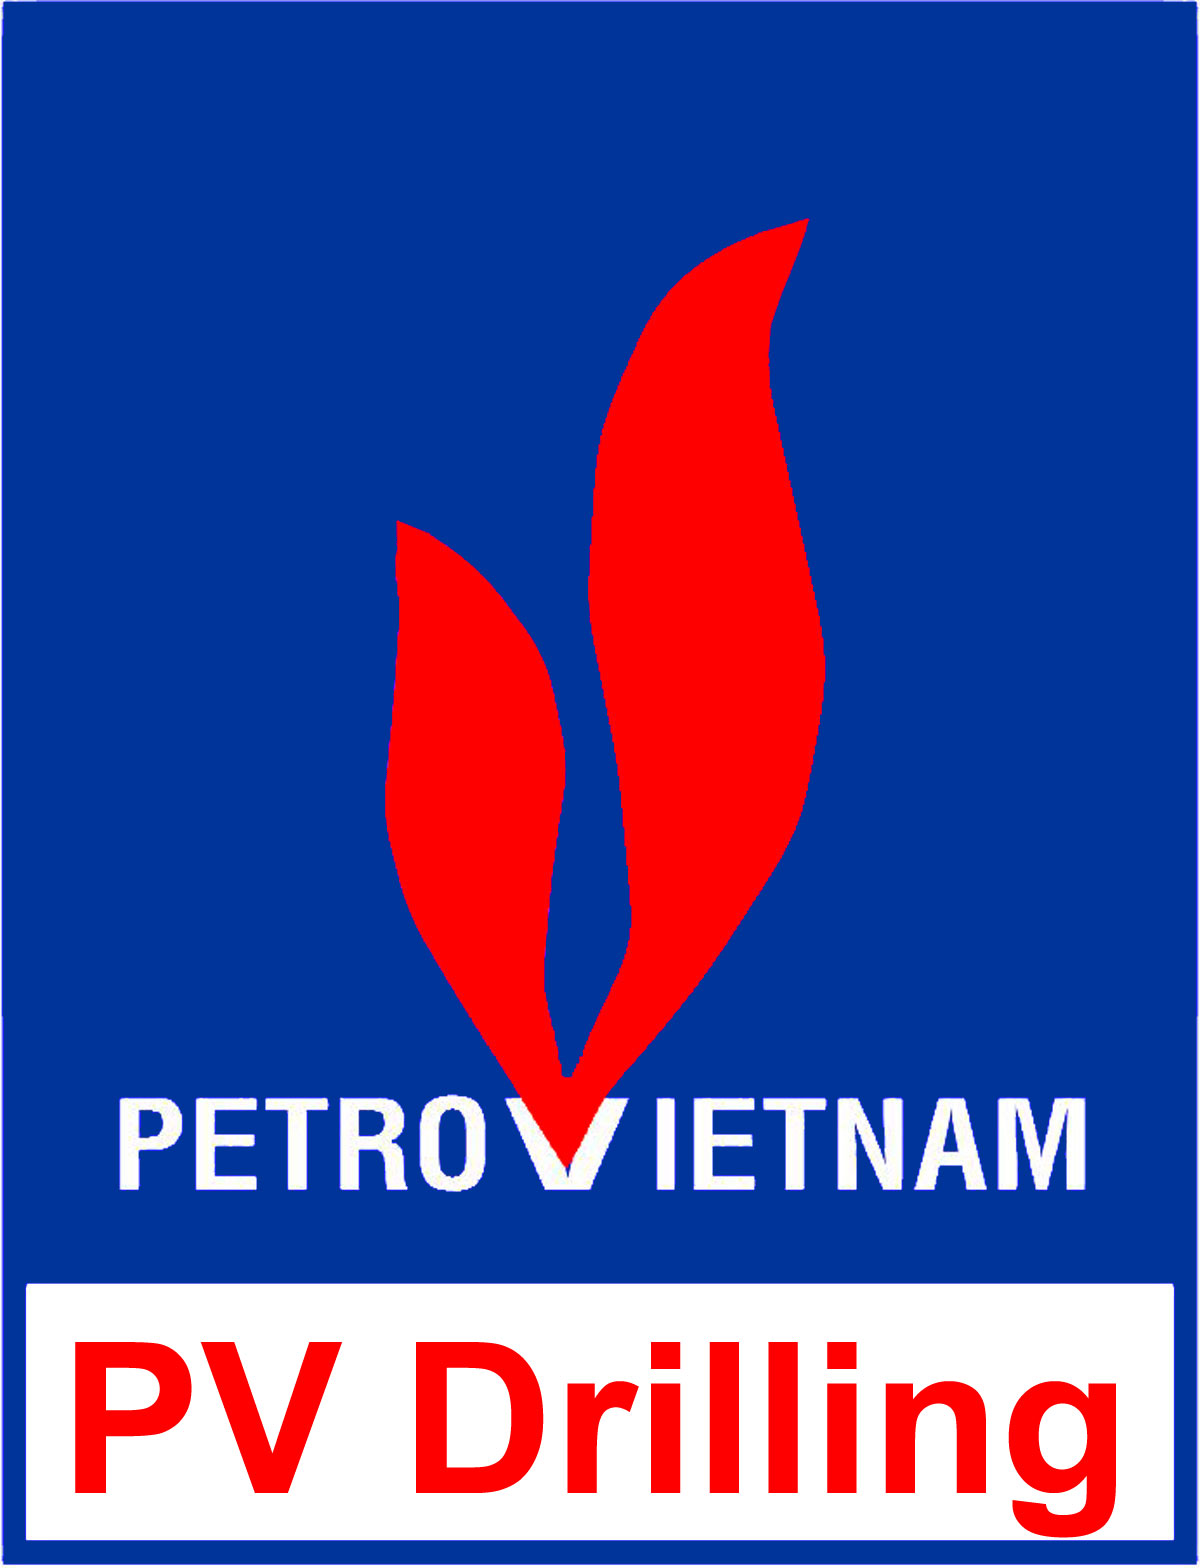 PVcomBank đăng ký bán 4 triệu cp PVD